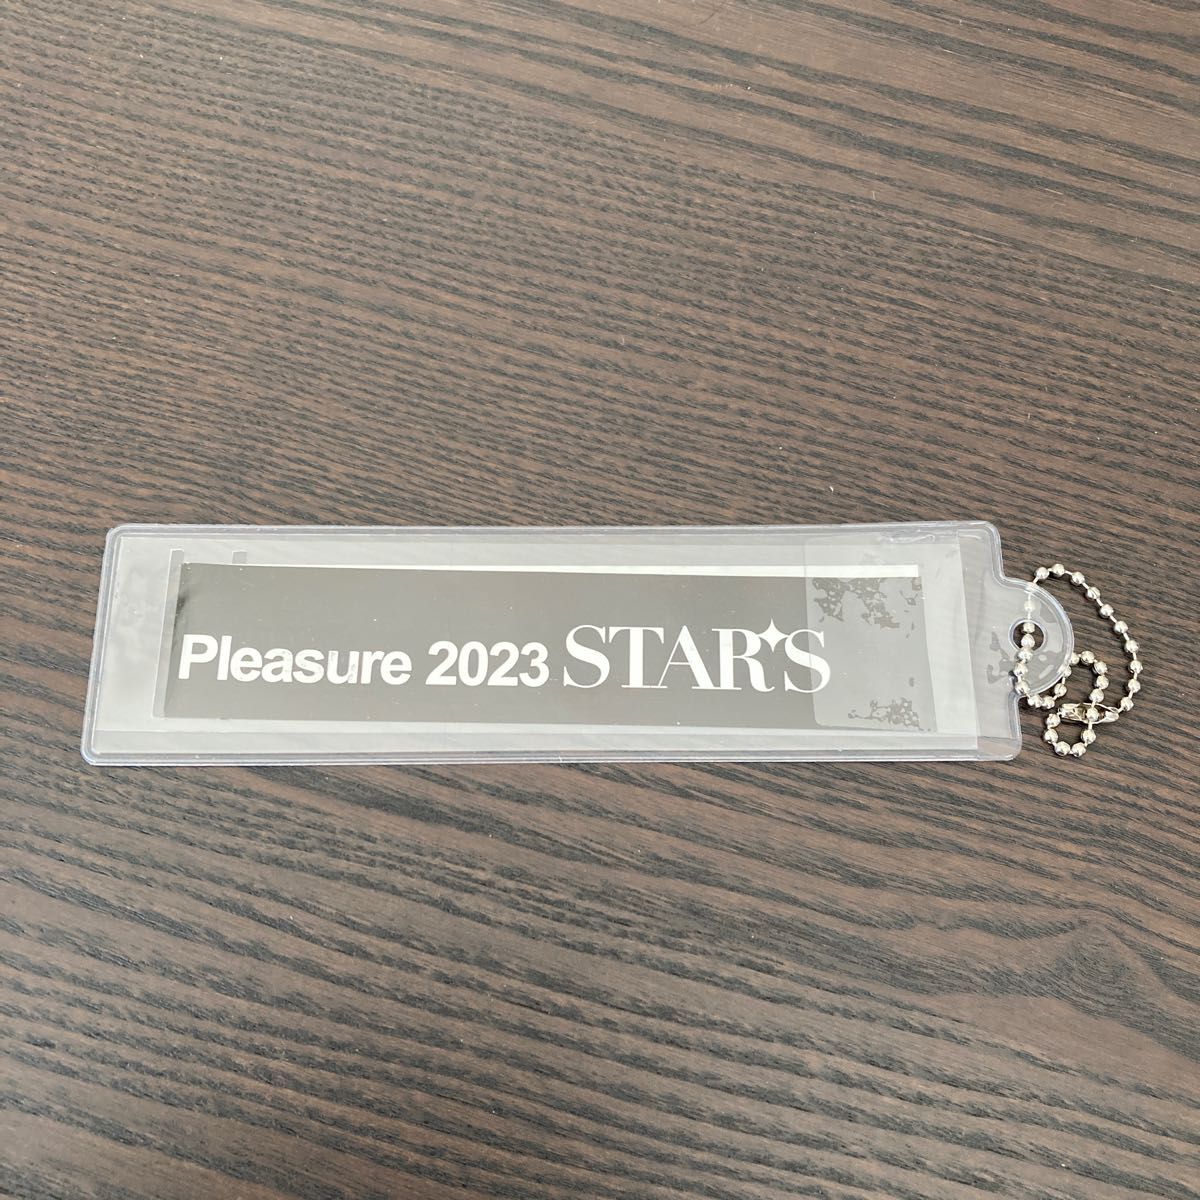 B'z pleasure stars 2023  銀テープ　キーホルダー